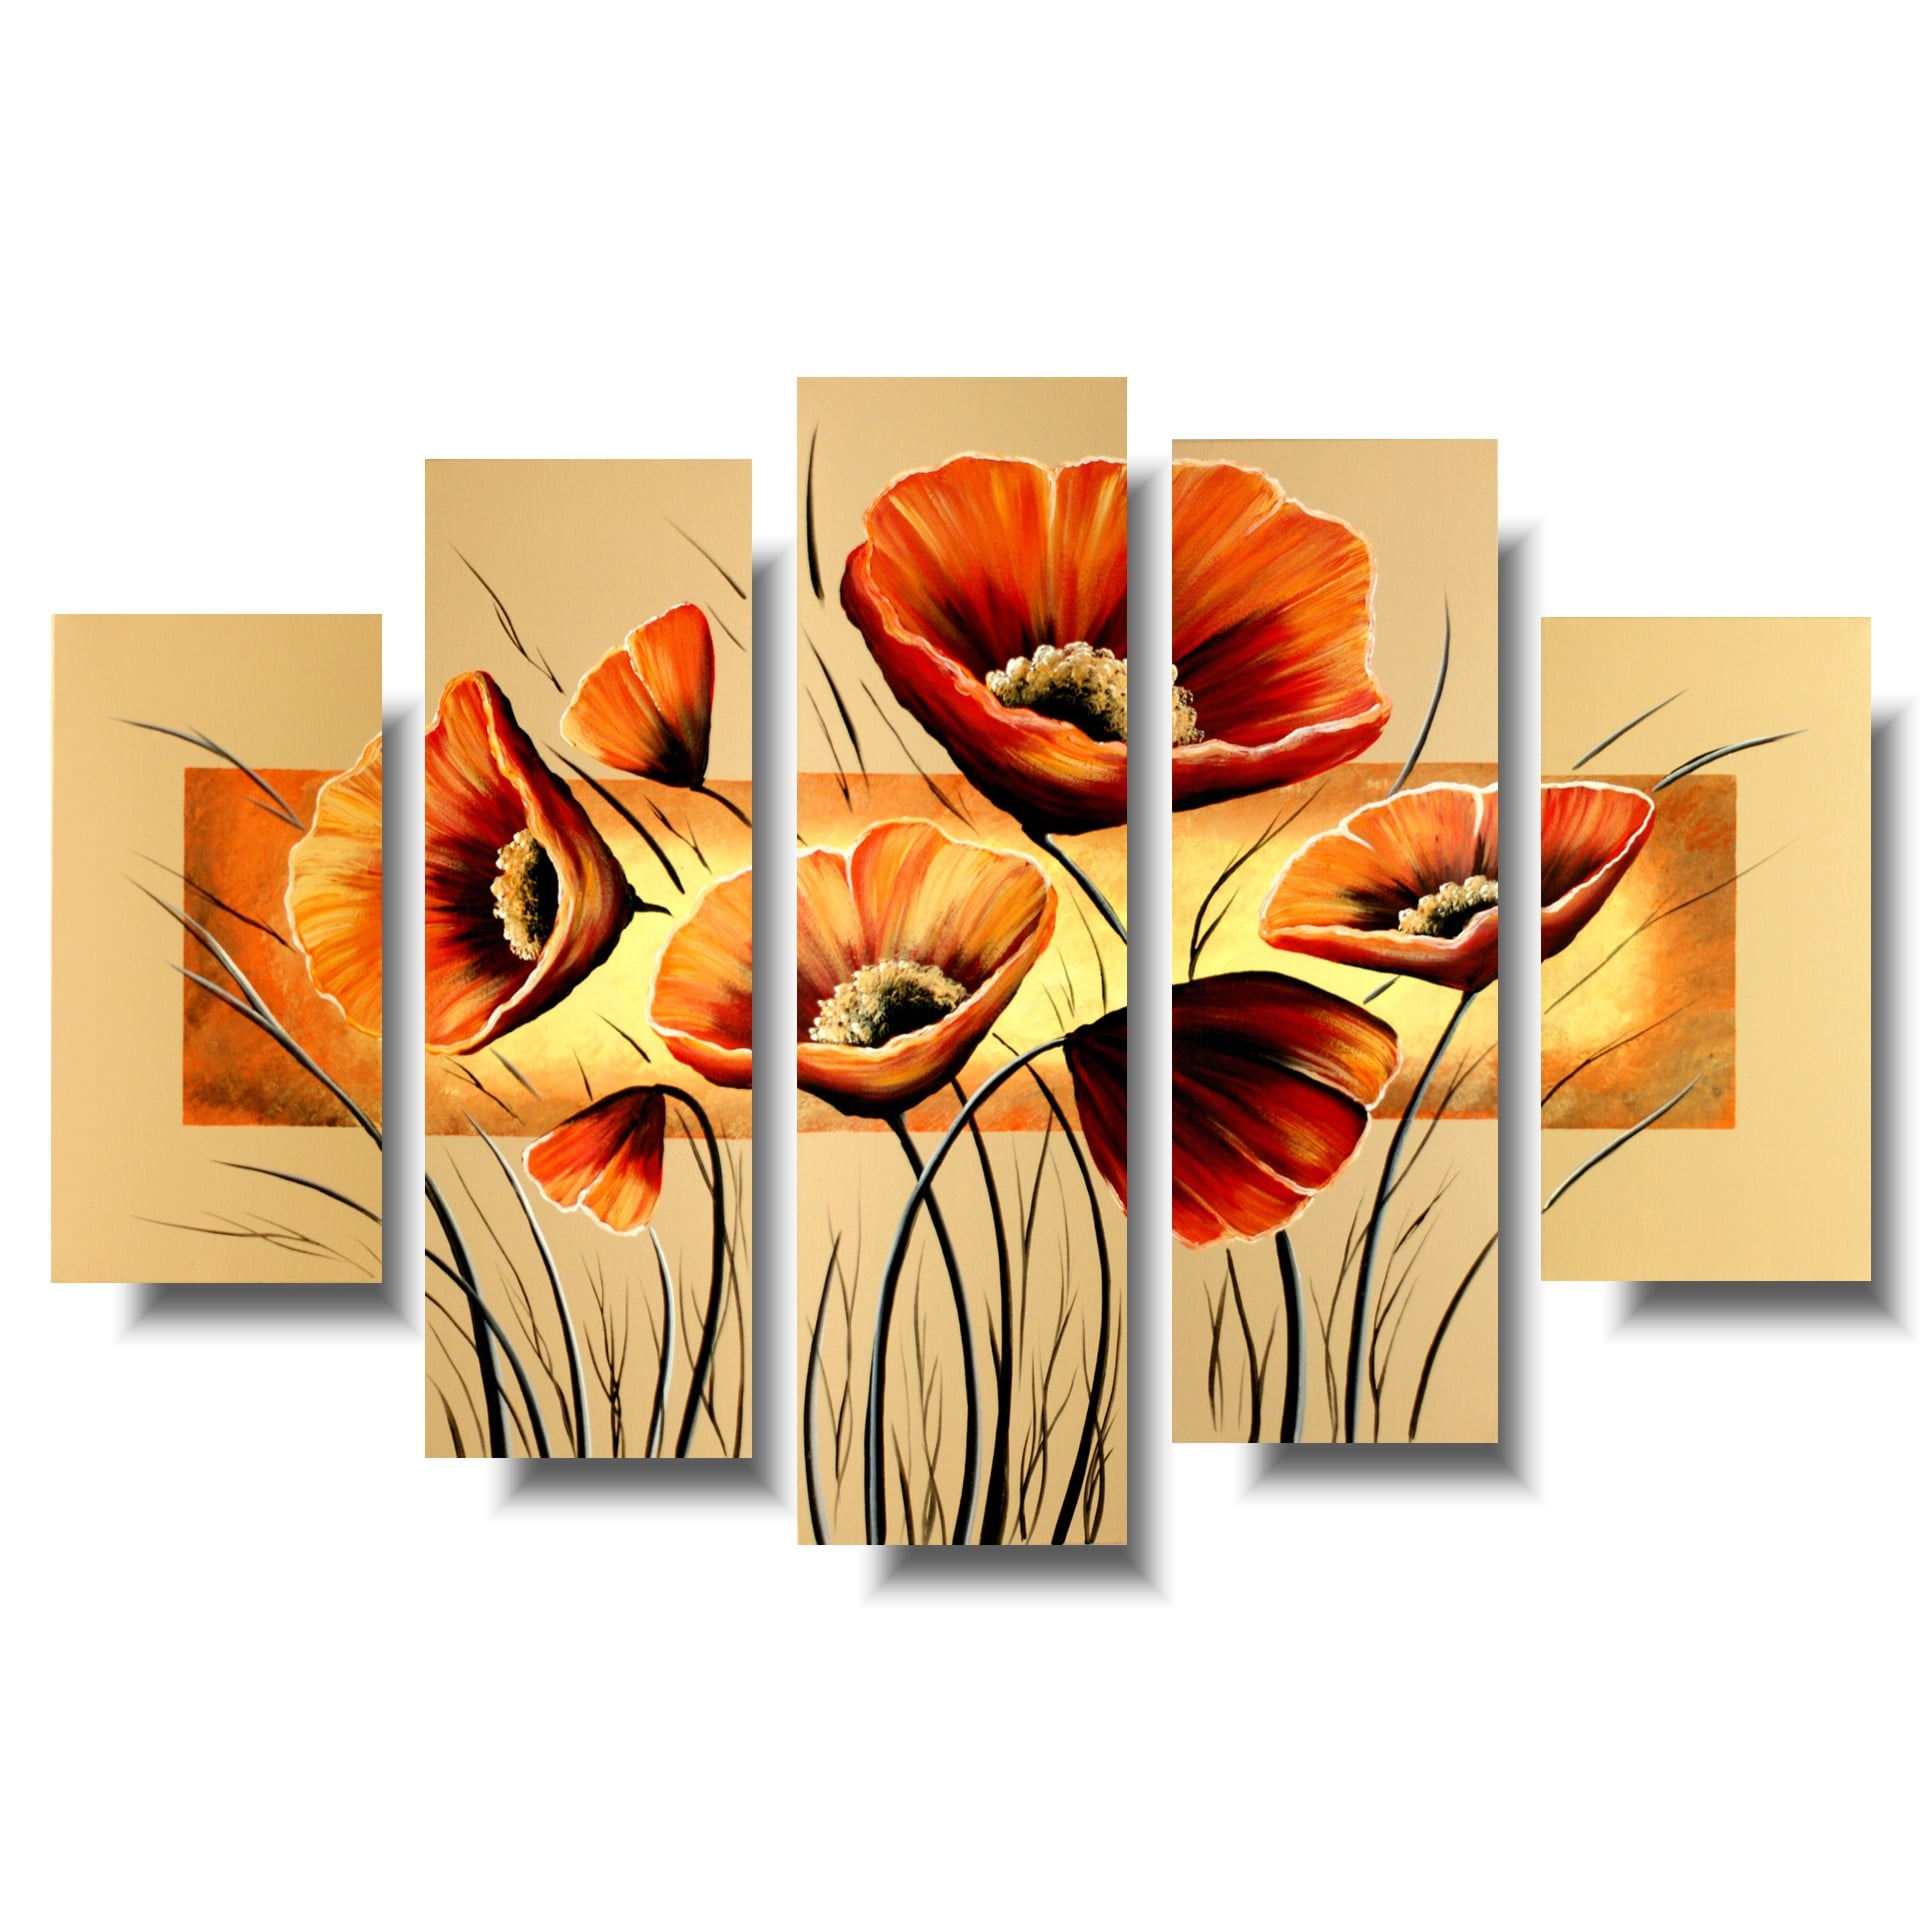 Obraz tryptyk obraz kwiaty pomarańczowe maki obrazy malowane do mieszkania 1109A